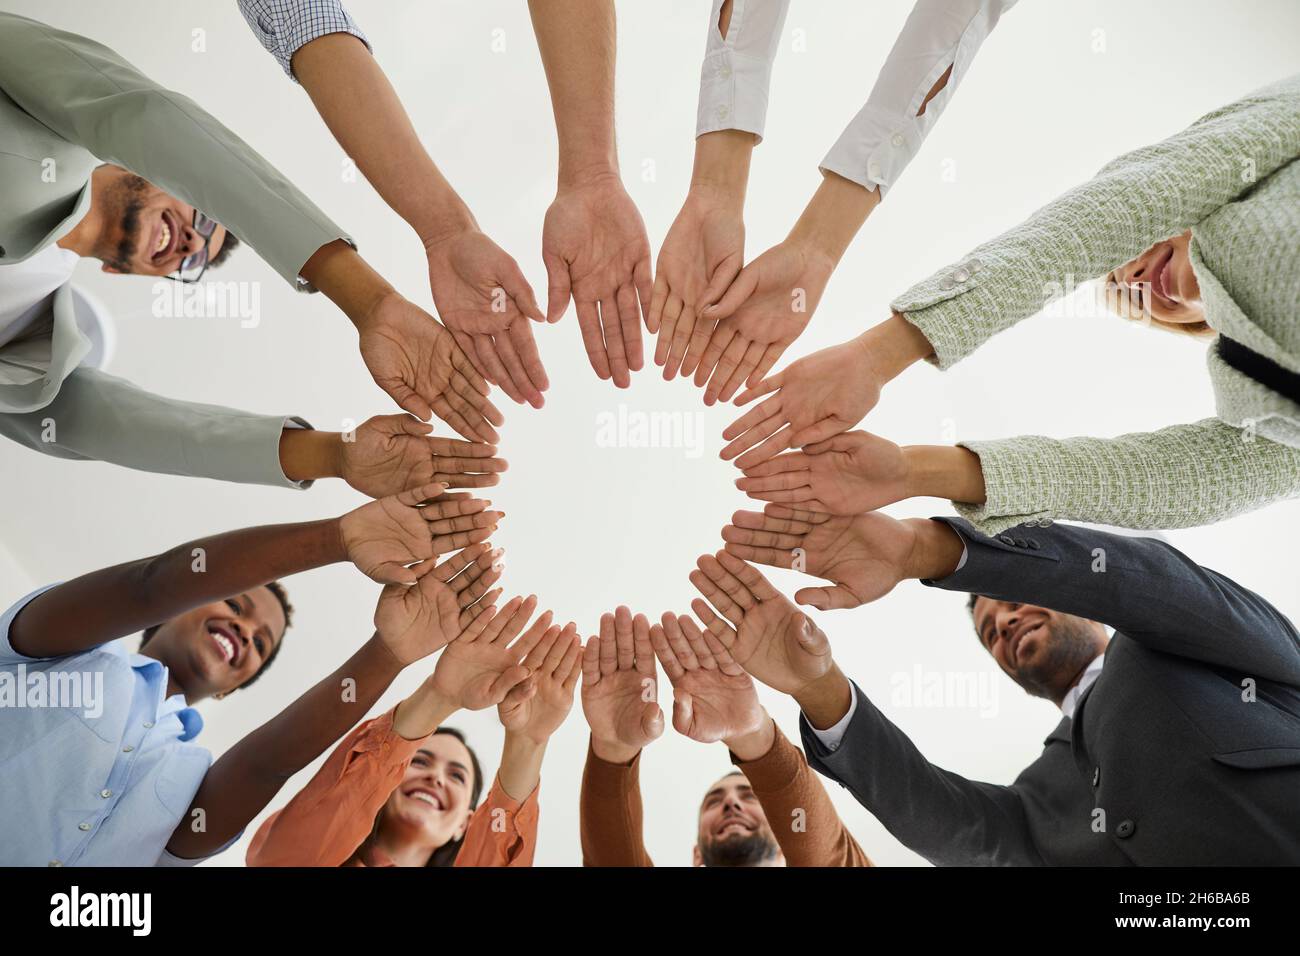 Groupe de gens d'affaires multiraciaux heureux se joignant à la main pour démontrer l'unité et la solidarité. Banque D'Images